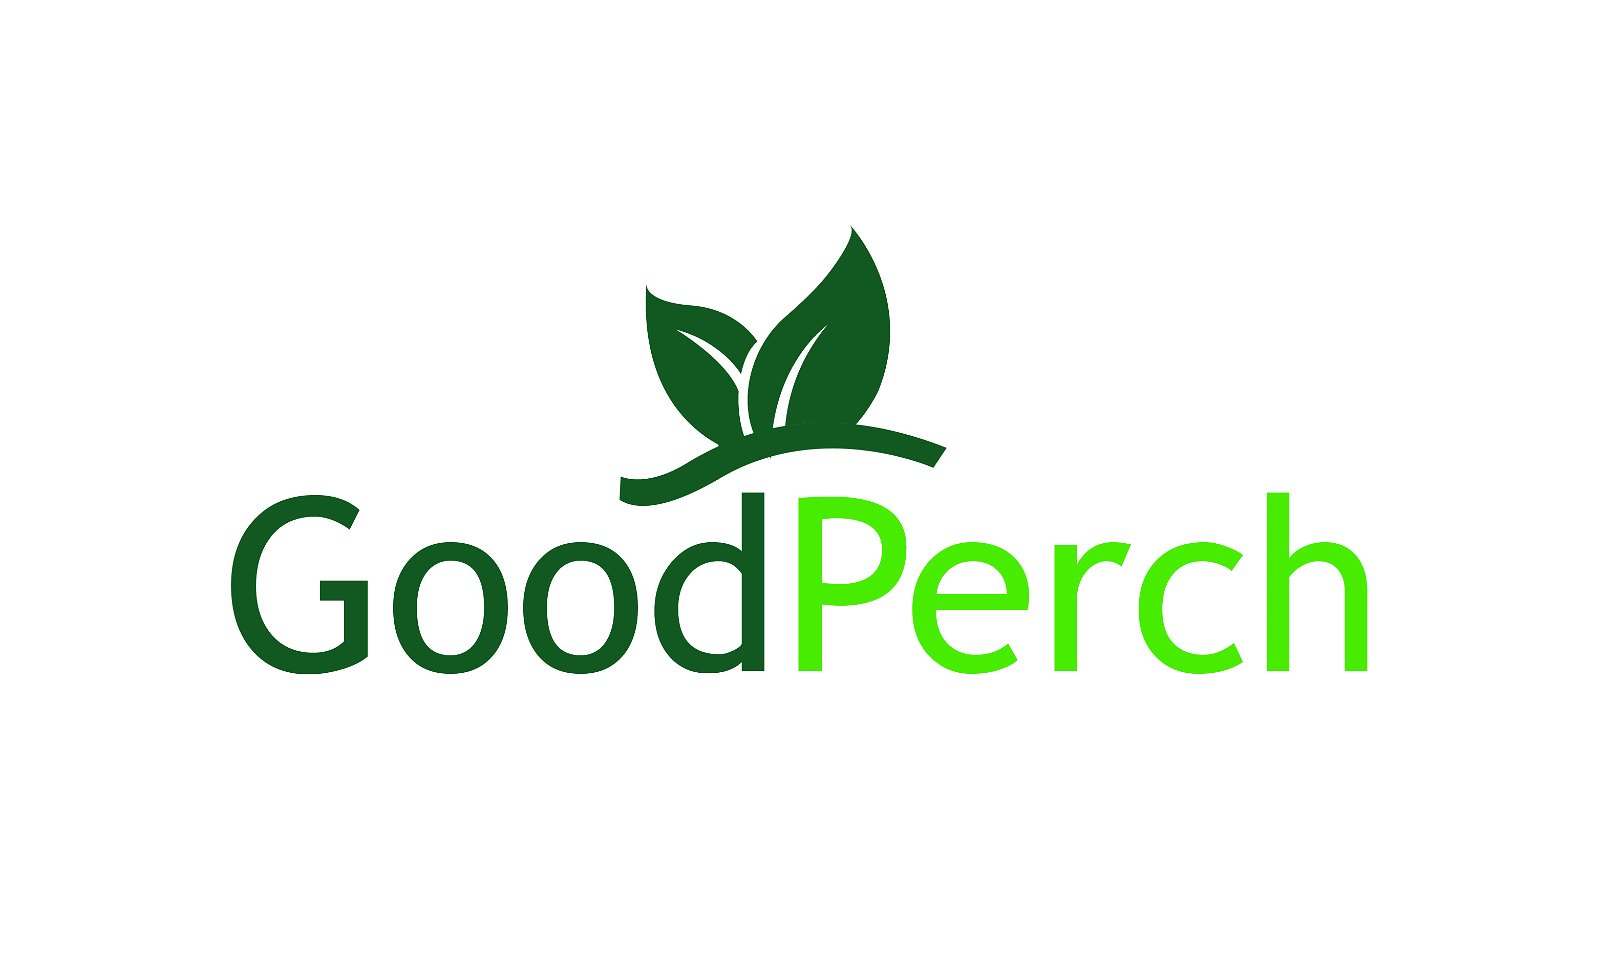 GoodPerch.com - Creative brandable domain for sale